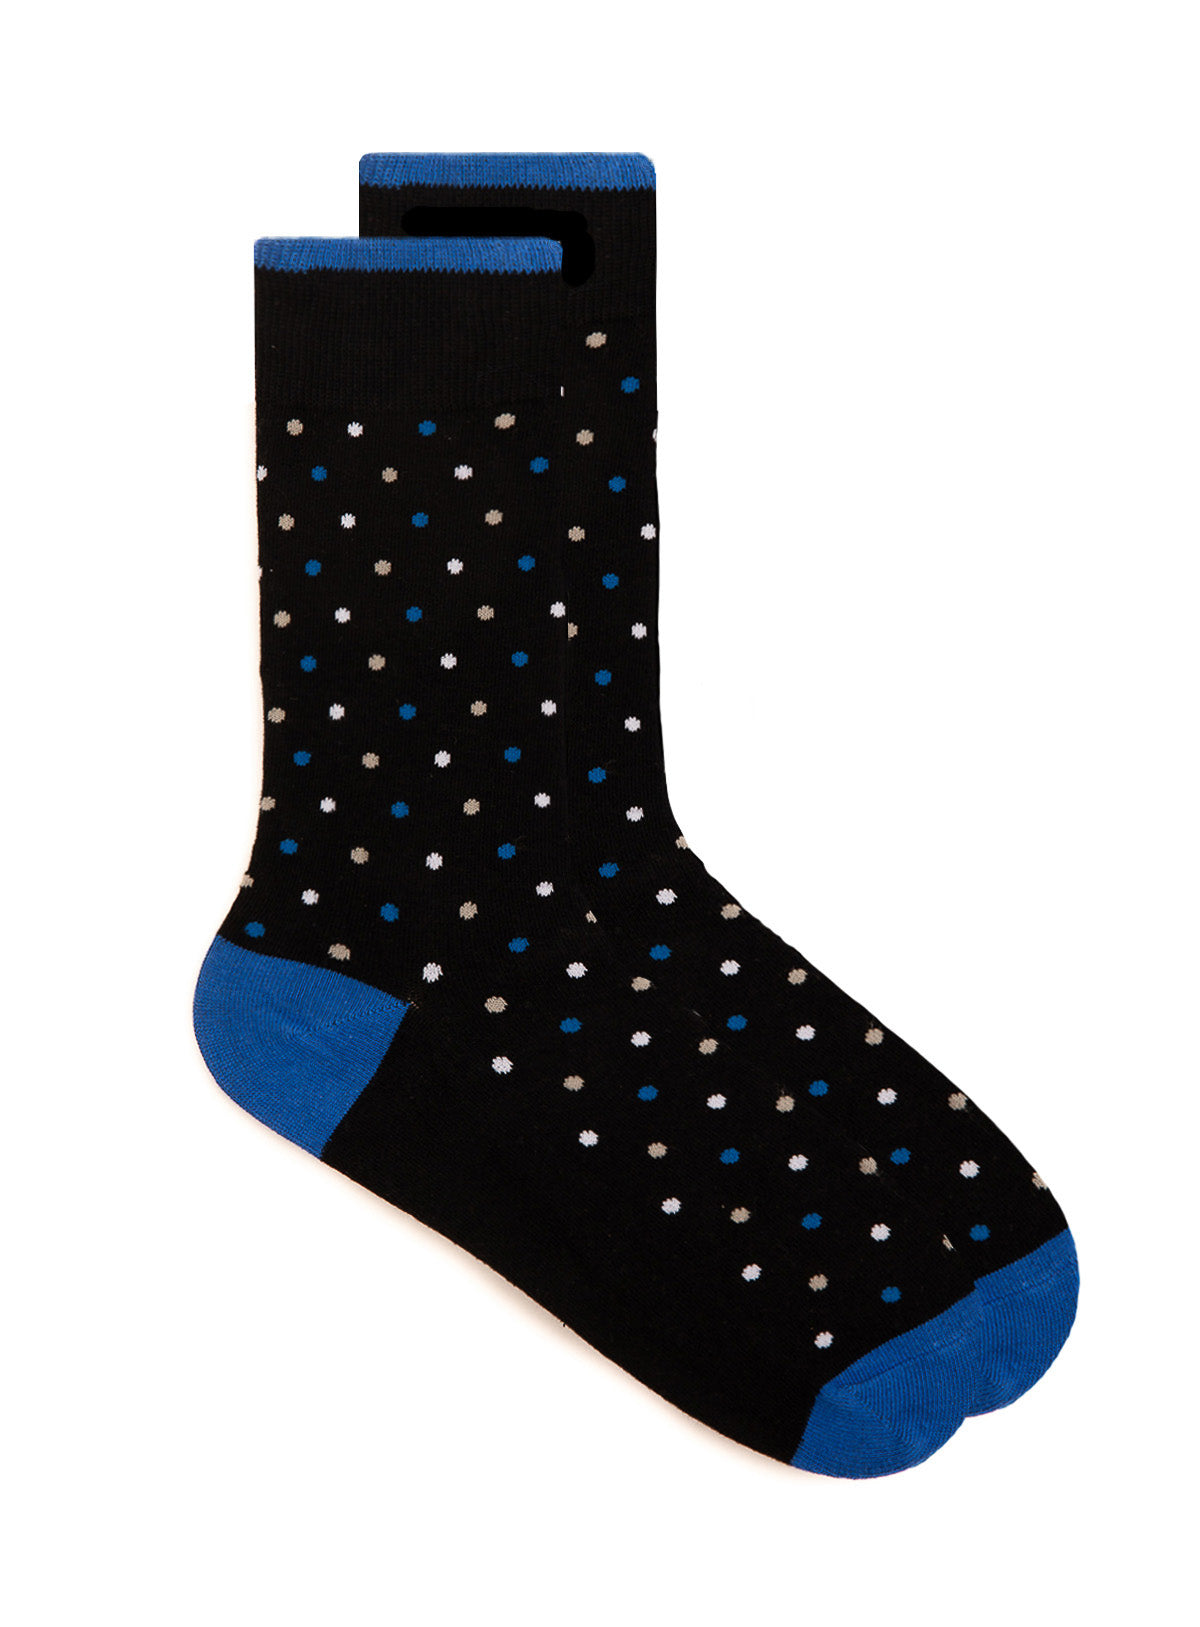 Multi Print Black Socks for men - Anthony of London